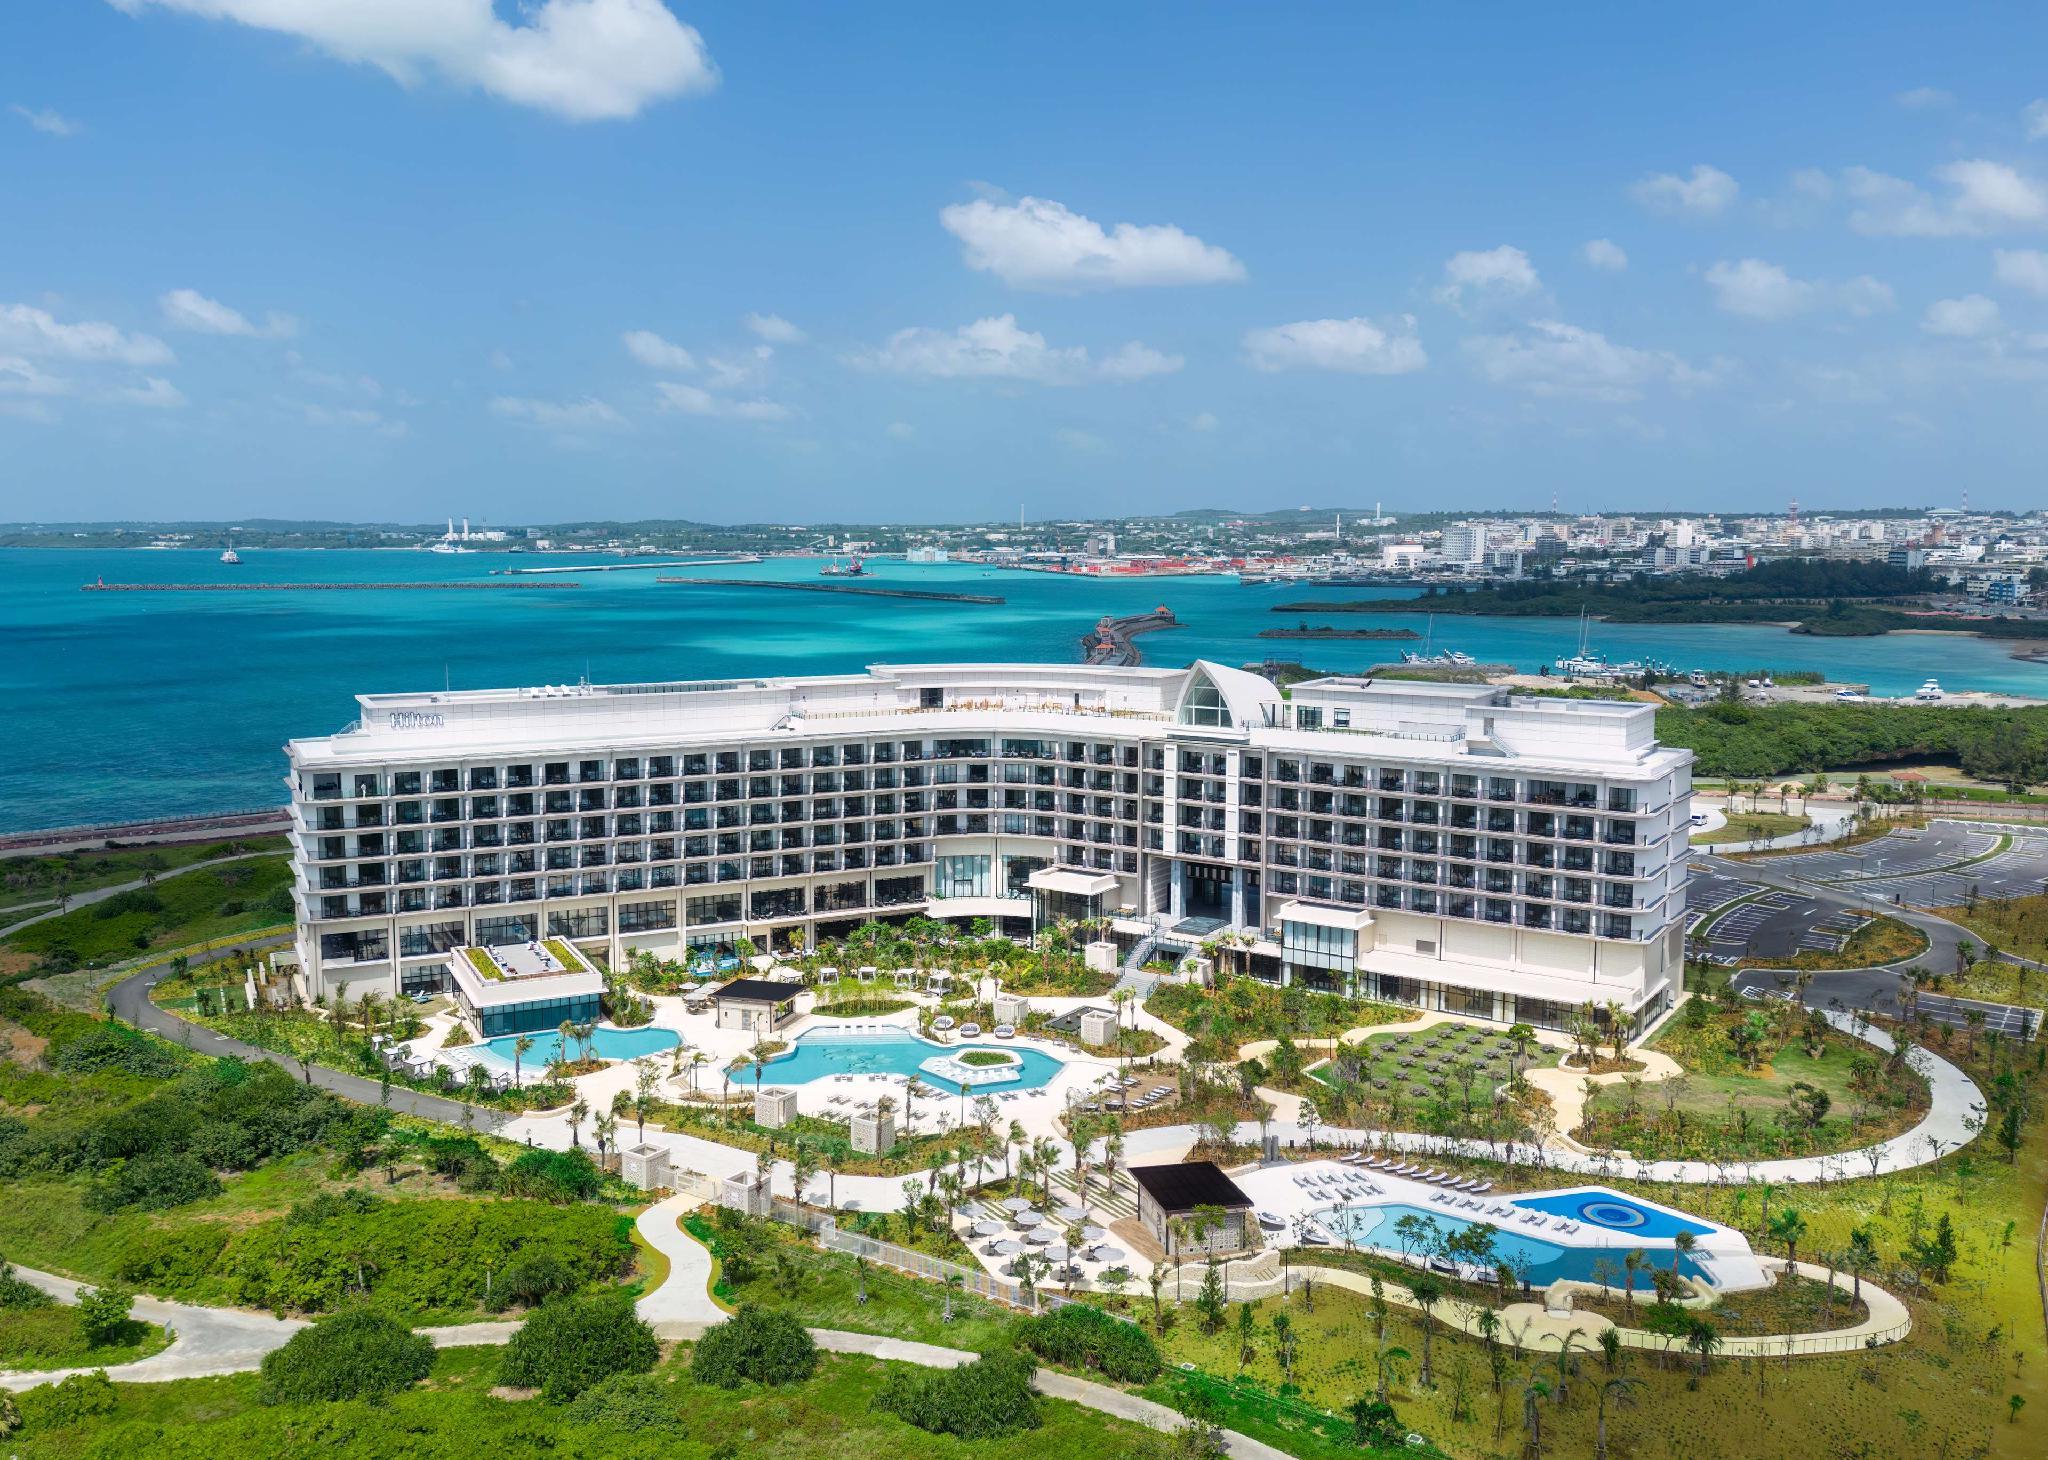 Hilton Okinawa Miyako Island Resort - Miyakojima